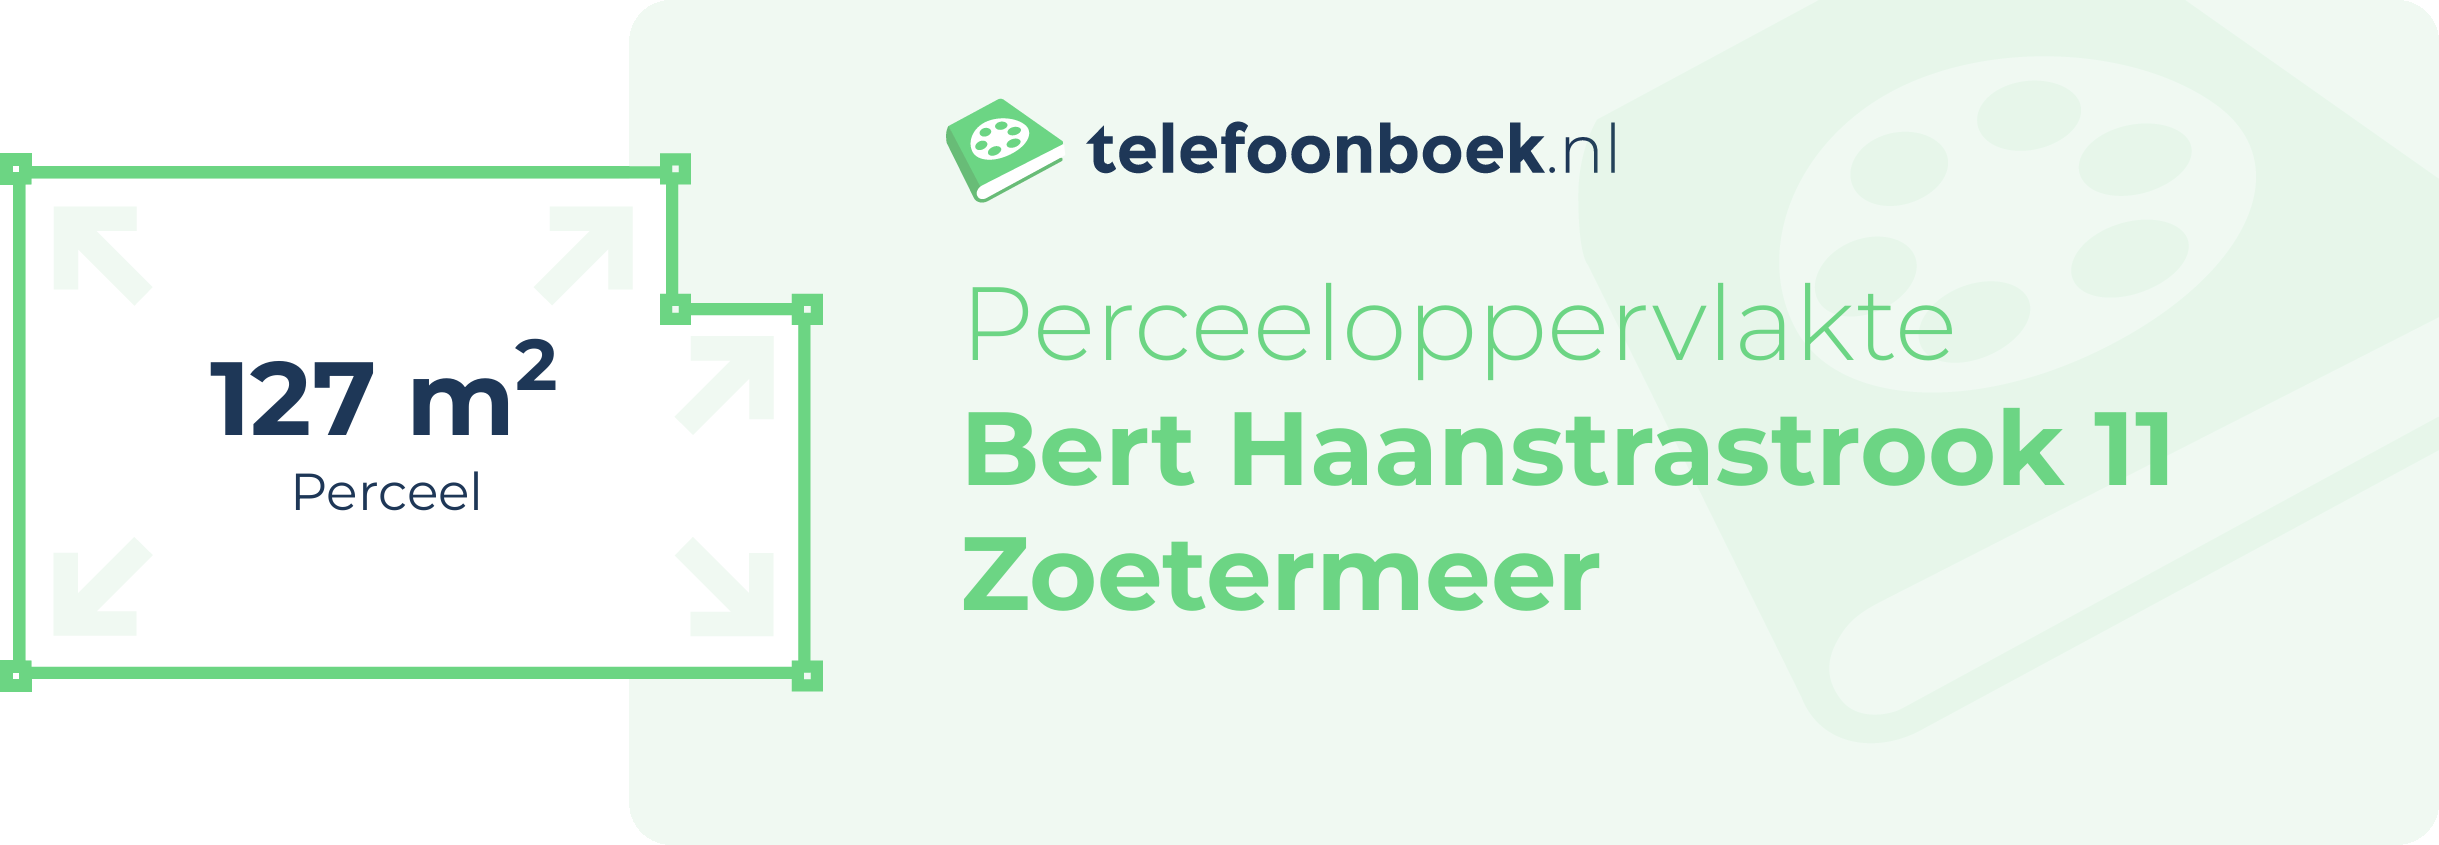 Perceeloppervlakte Bert Haanstrastrook 11 Zoetermeer